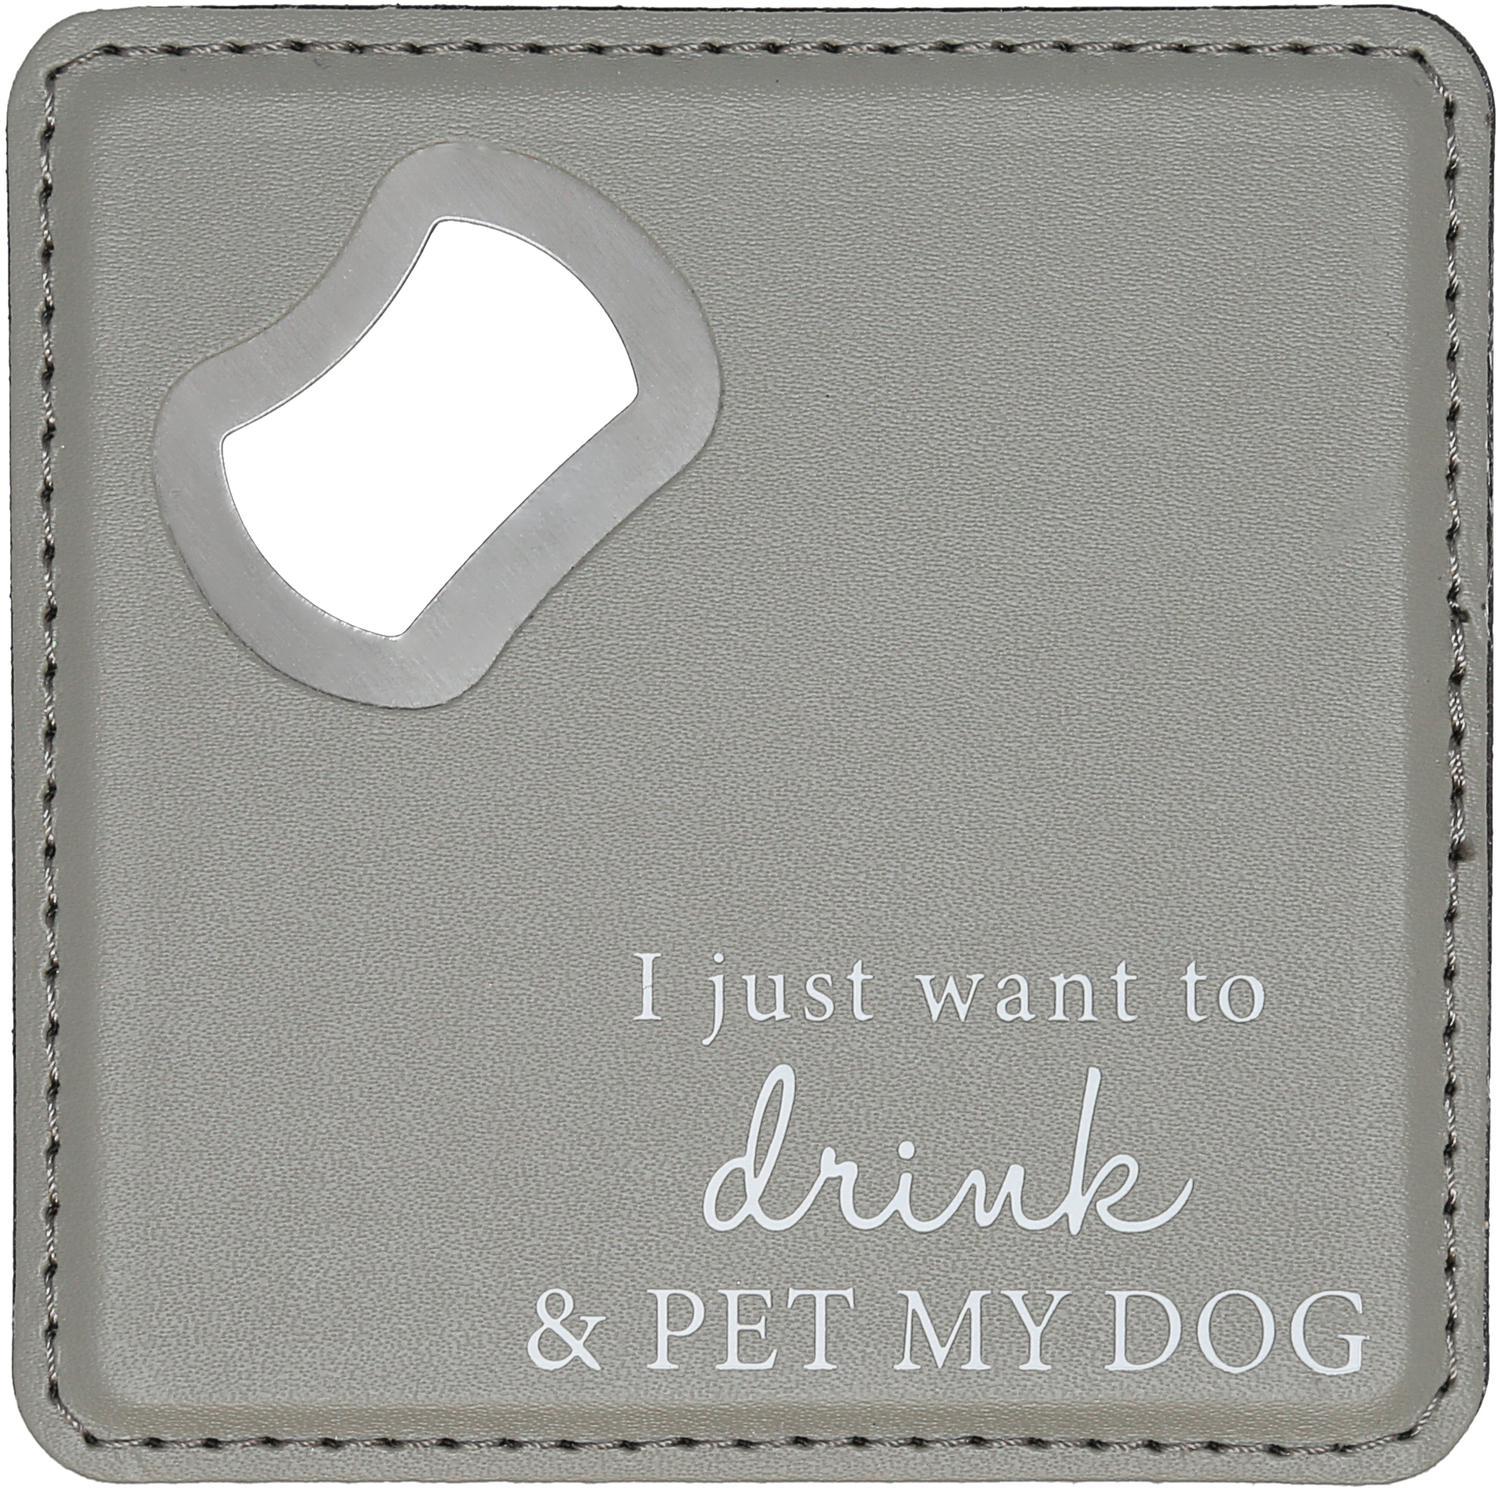 Pet My Dog - 4" x 4" Bottle Opener Coaster